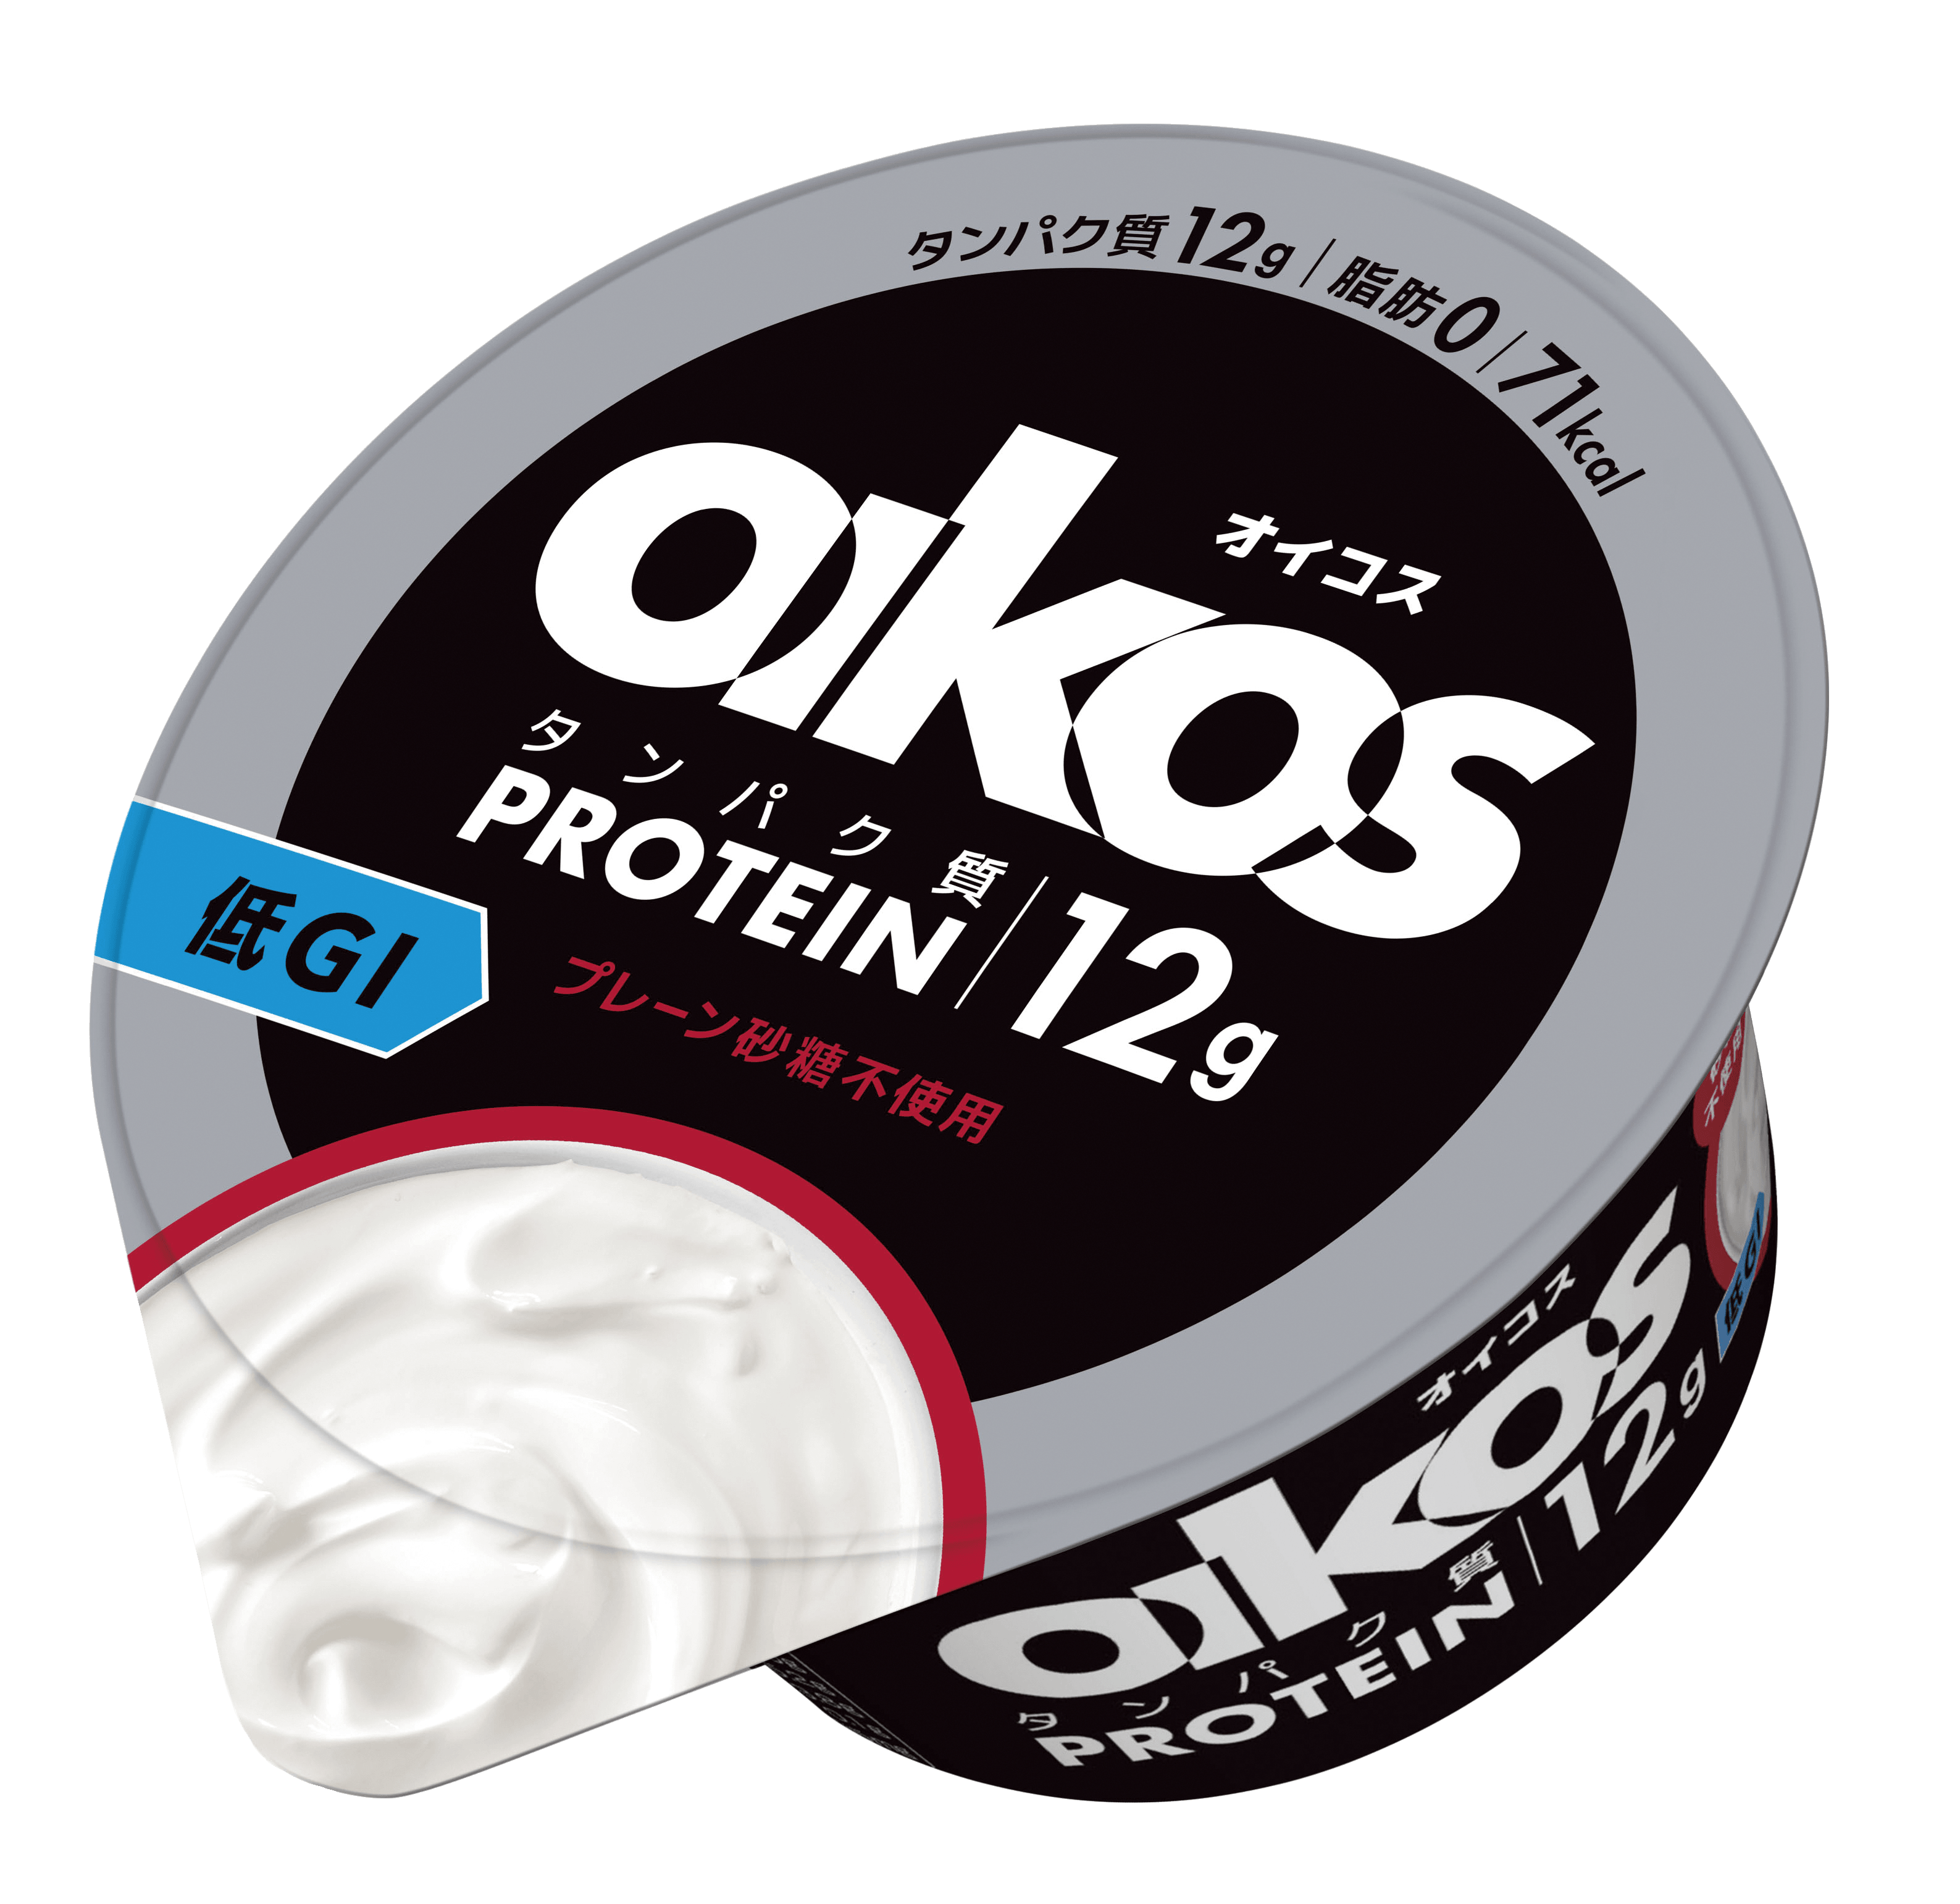 OIKOS 高タンパク質 プレーン・砂糖不使用